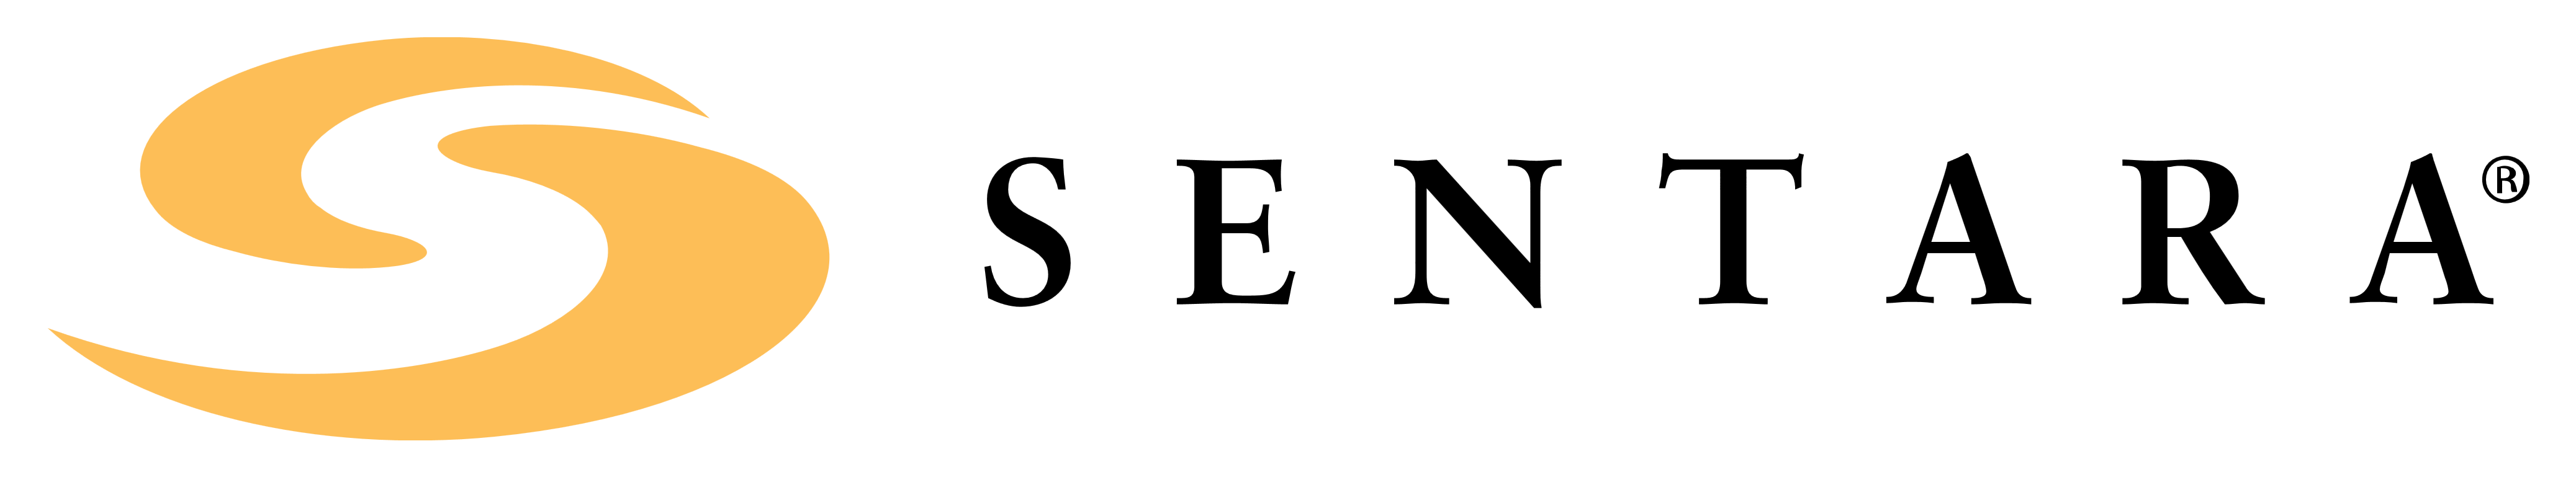 Sentara logo, logotype